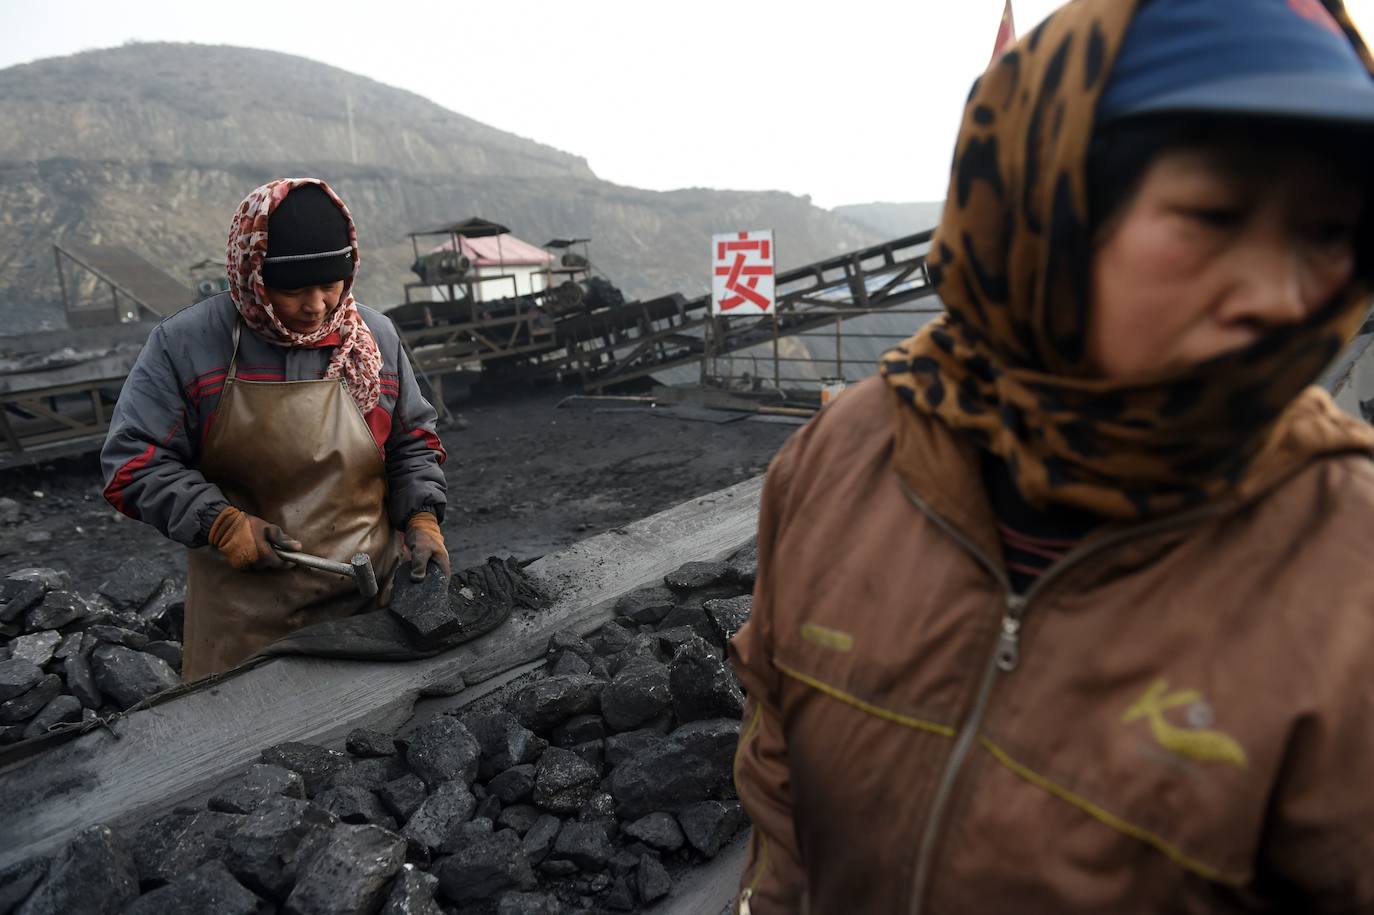 Trabajadores clasificando carbón en una cinta transportadora, cerca de una mina de carbón en Datong, en la provincia de Shanxi, en el norte de China. La promesa de Xi Jinping de eliminar las emisiones para 2060 completa una pirueta diplomática que lleva a China al corazón de la agenda verde global.